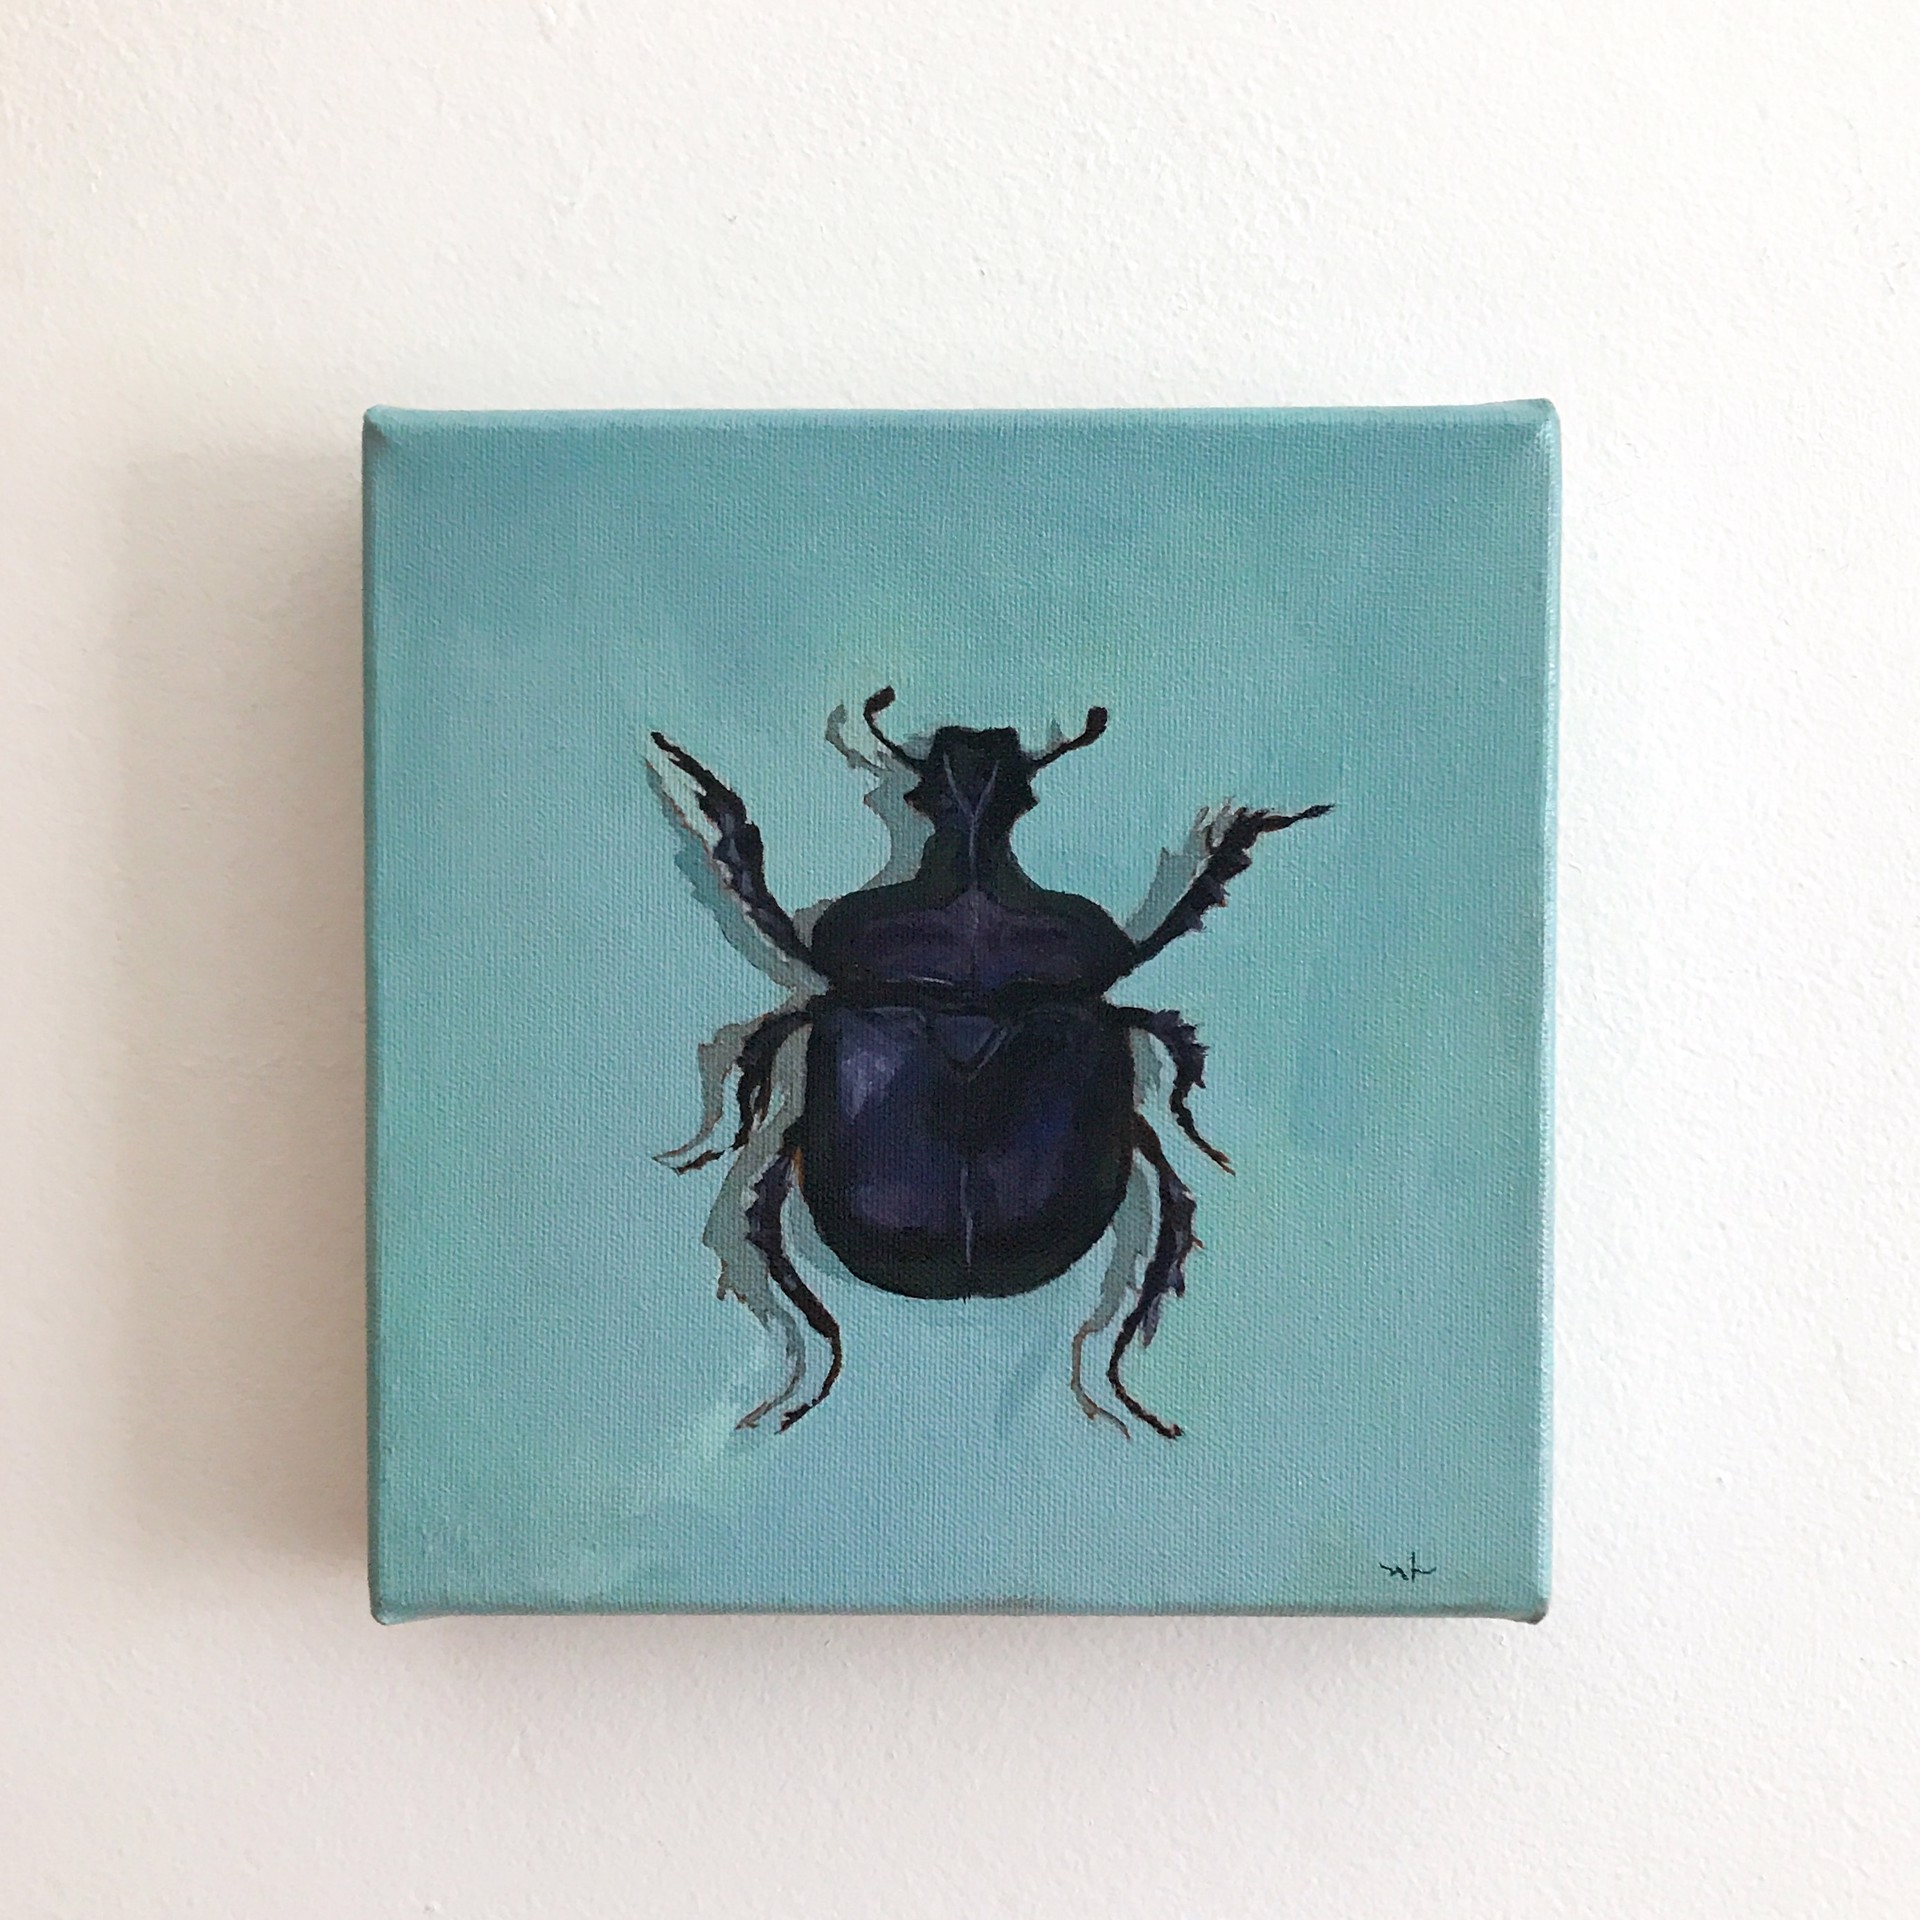 Scarab Beetle by Noelle Holler